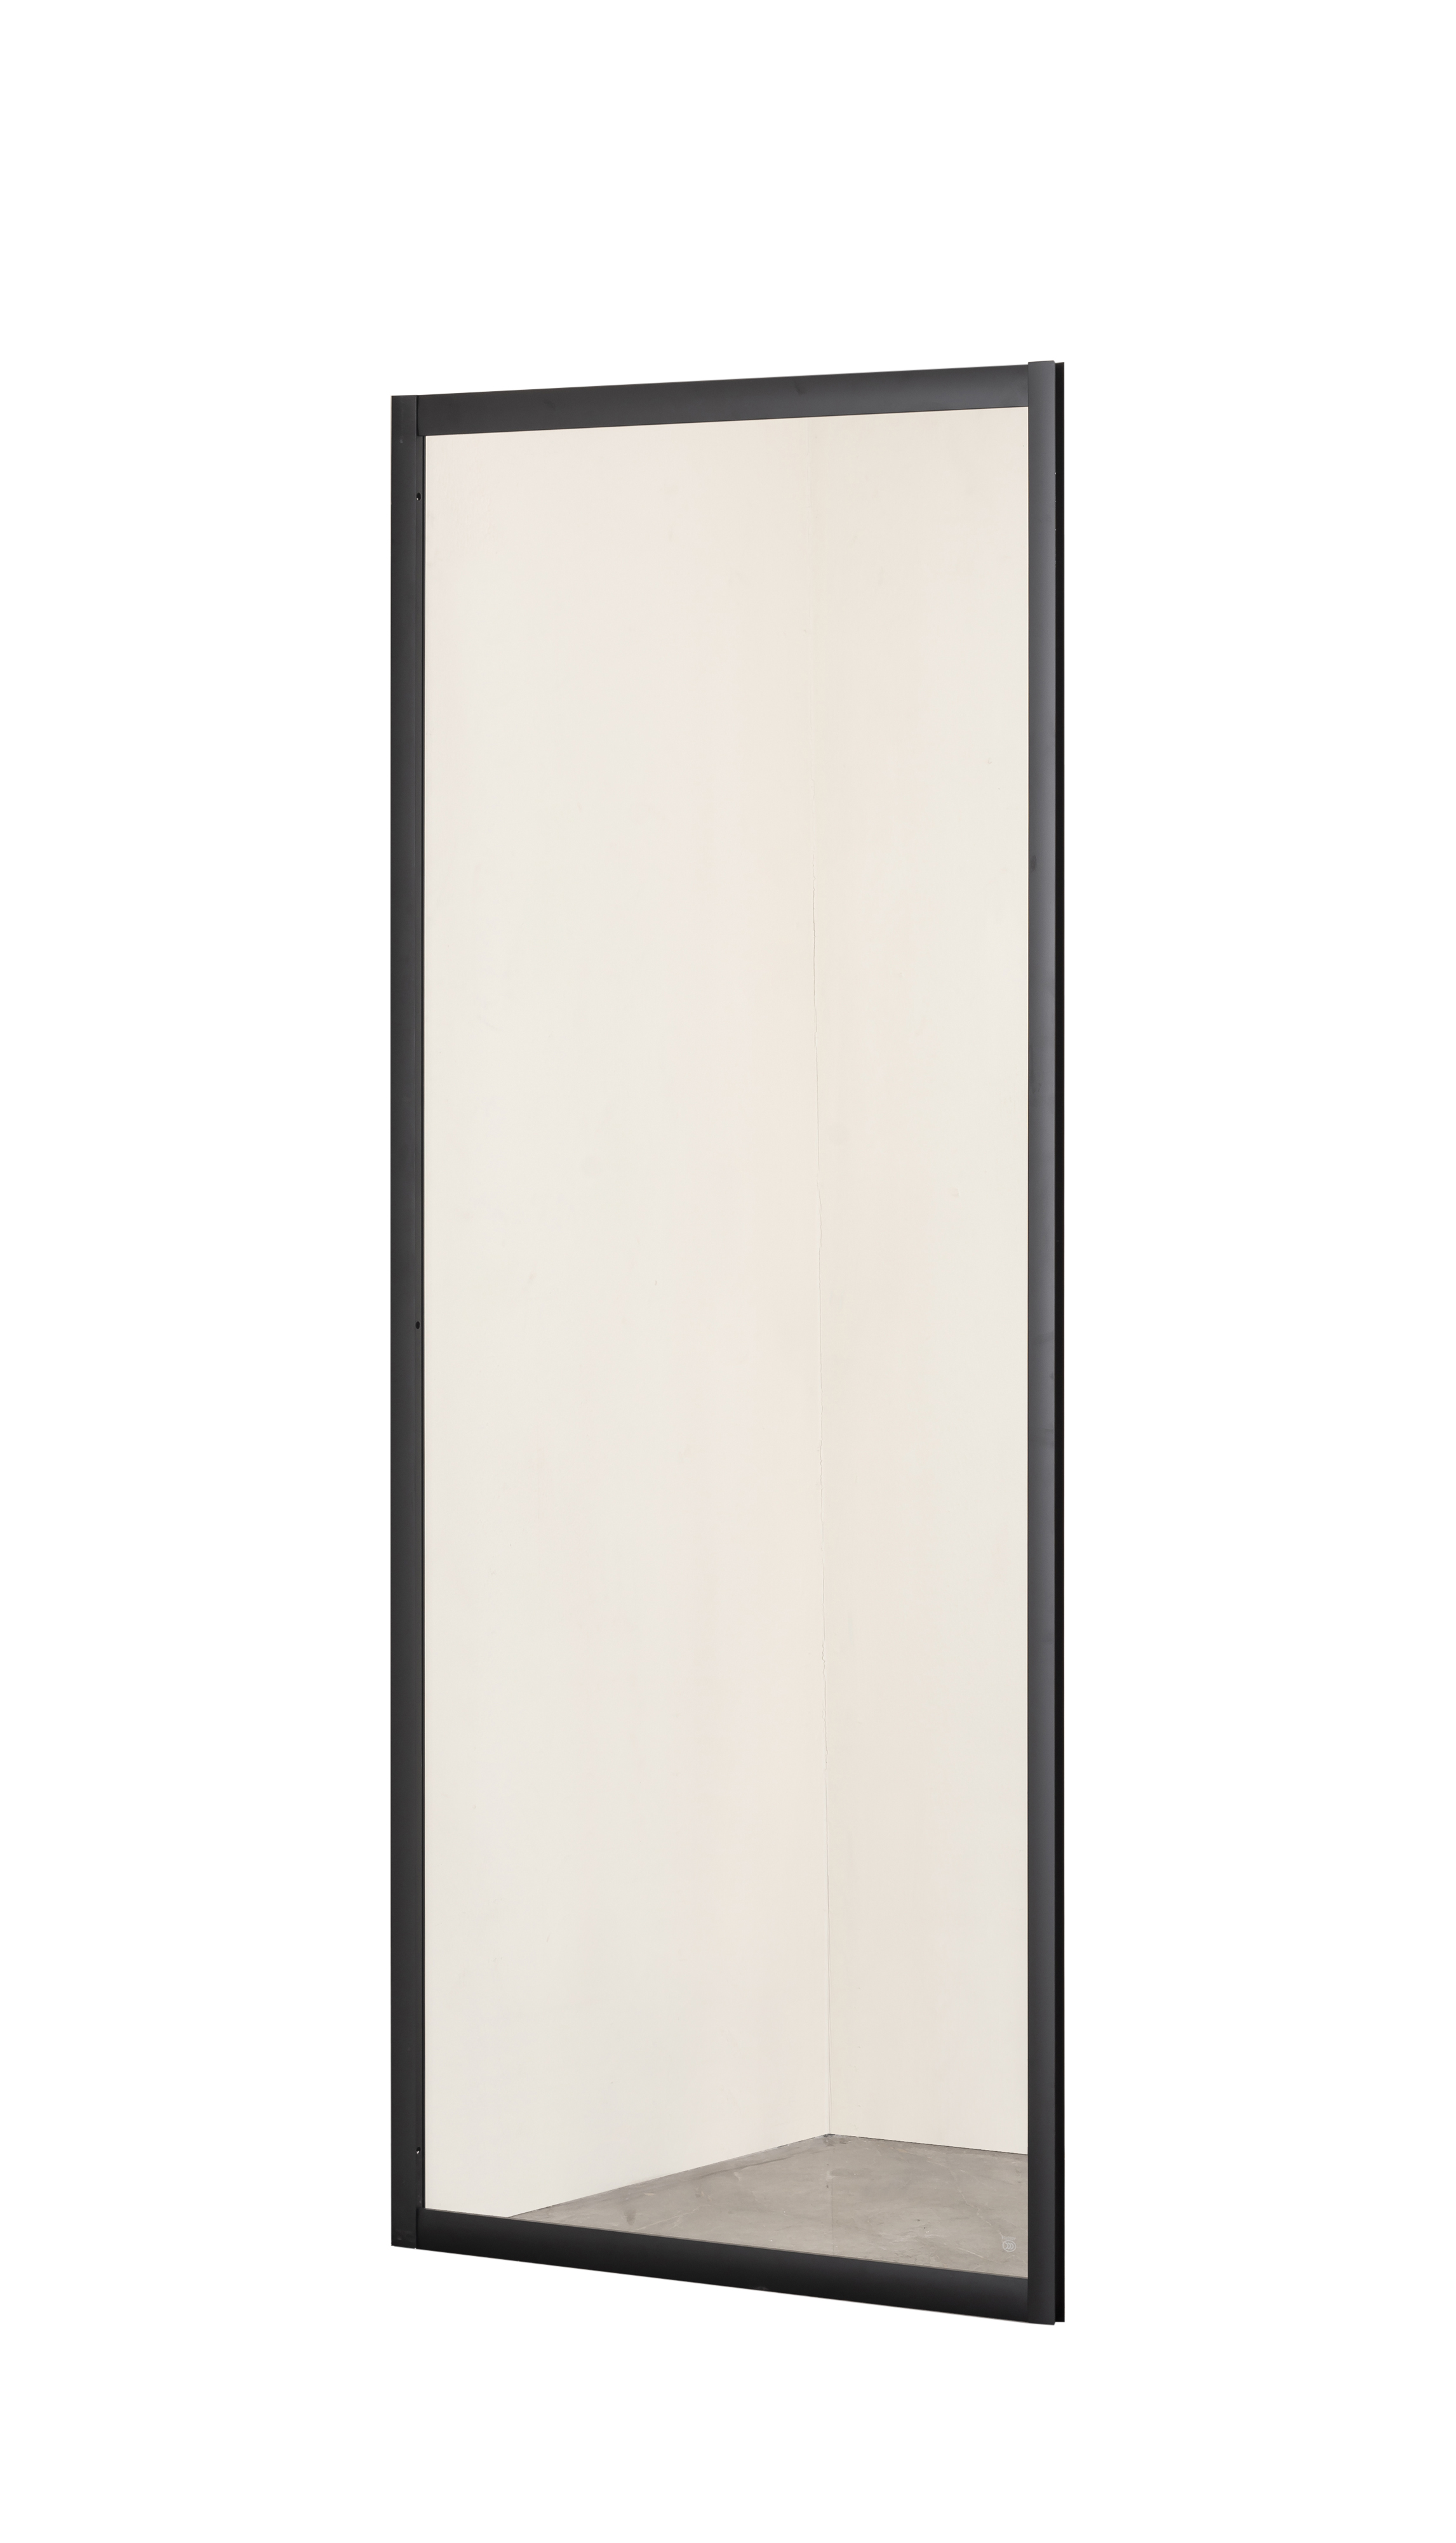 Боковая стенка Taliente 100x195 см TA-10-1CB стекло прозрачное, профиль черный